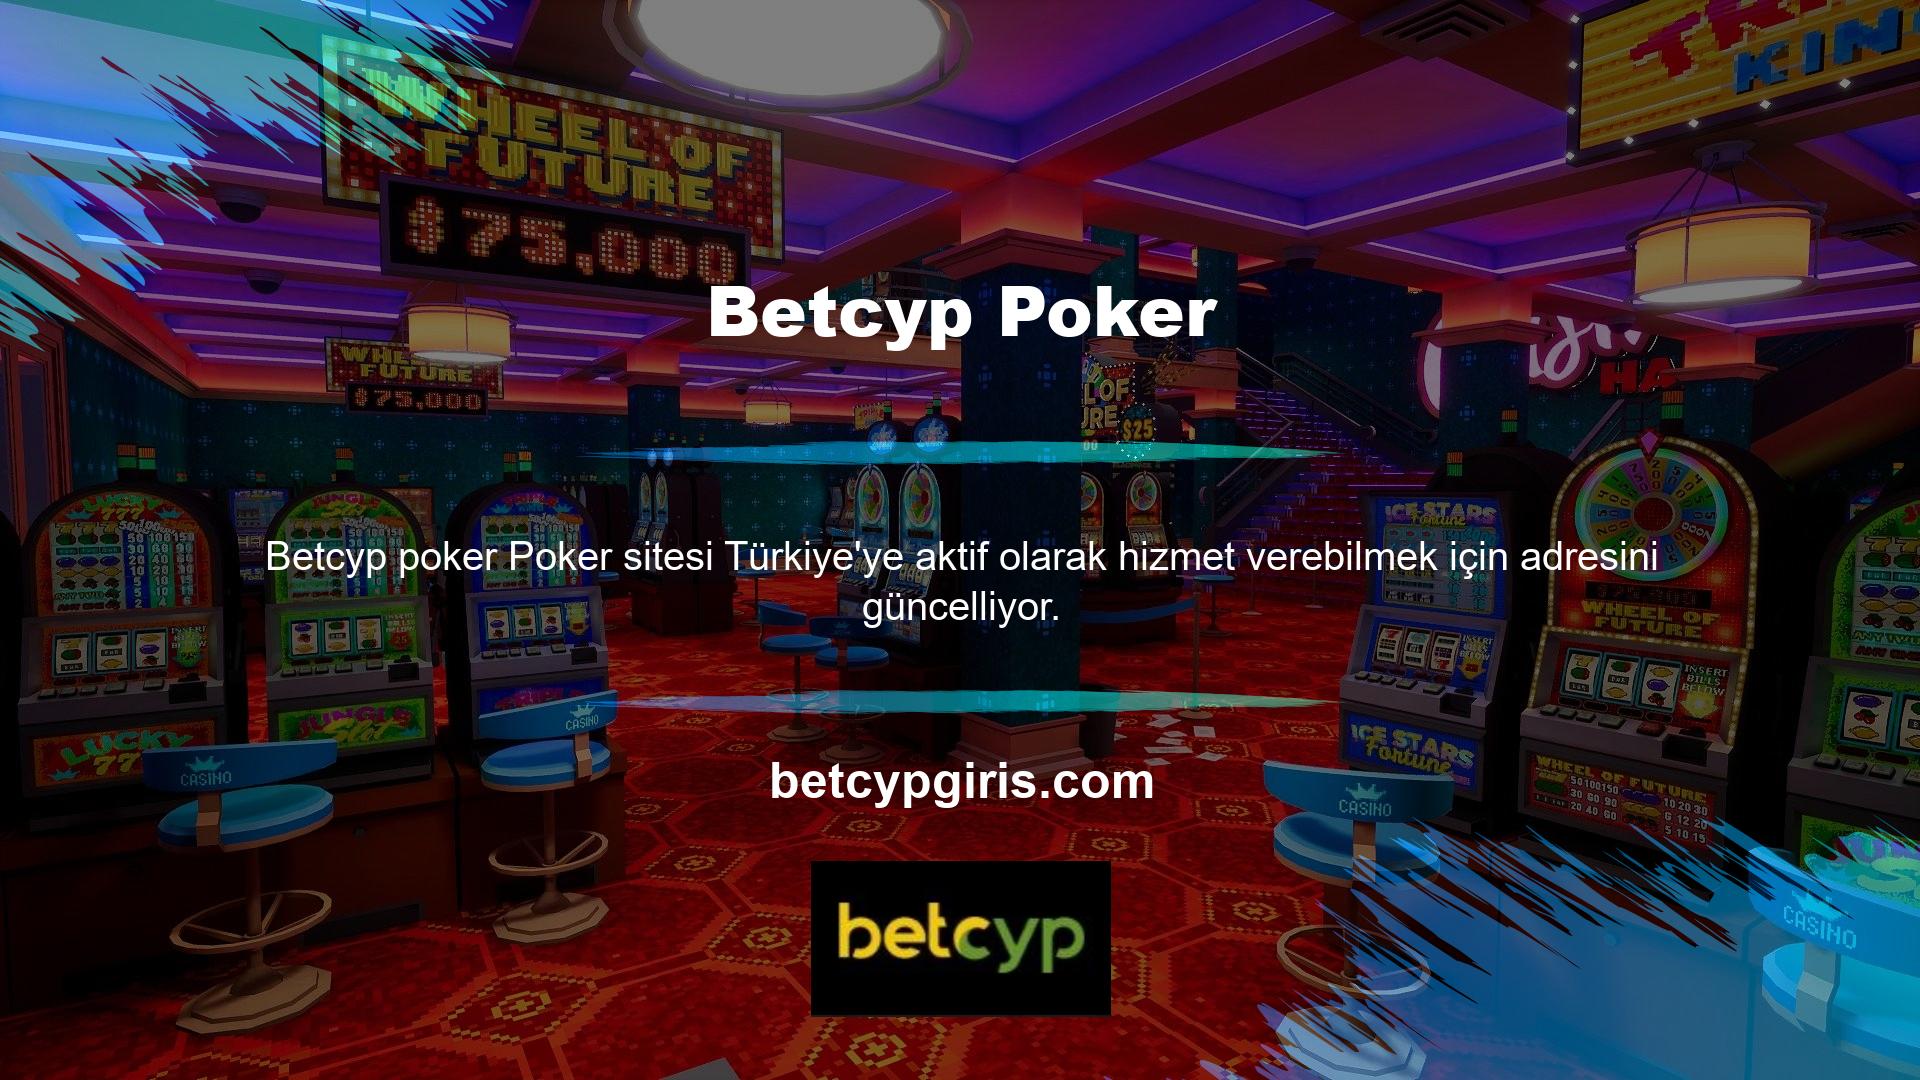 Betcyp, poker oyunlarından biri olan BTK'nın yasaklanmasının ardından açtığı mevcut adresinde Texas Hold'em, Turkey Poker, Open Poker, Omaha Poker ve Omaha Hi-Lo oynuyor